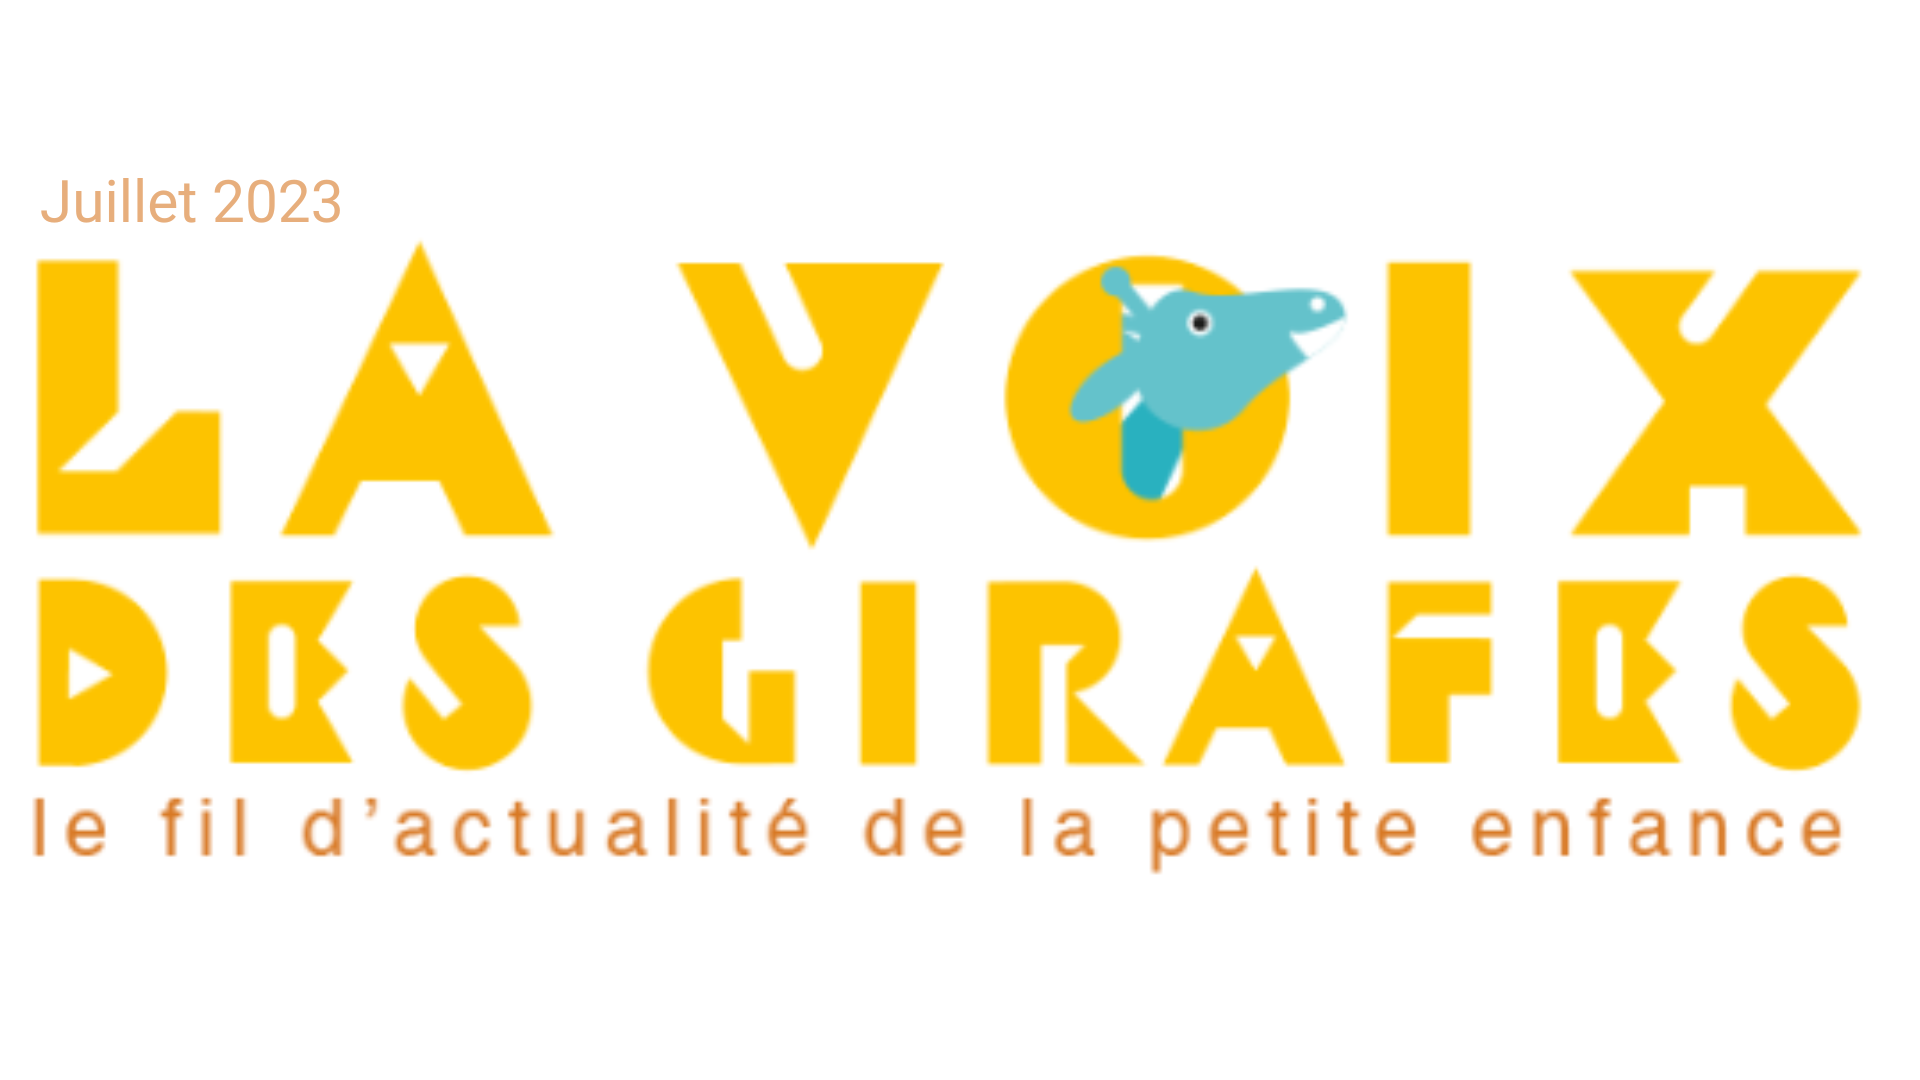 Lire la newsletter La Voix des Girafes #Juillet